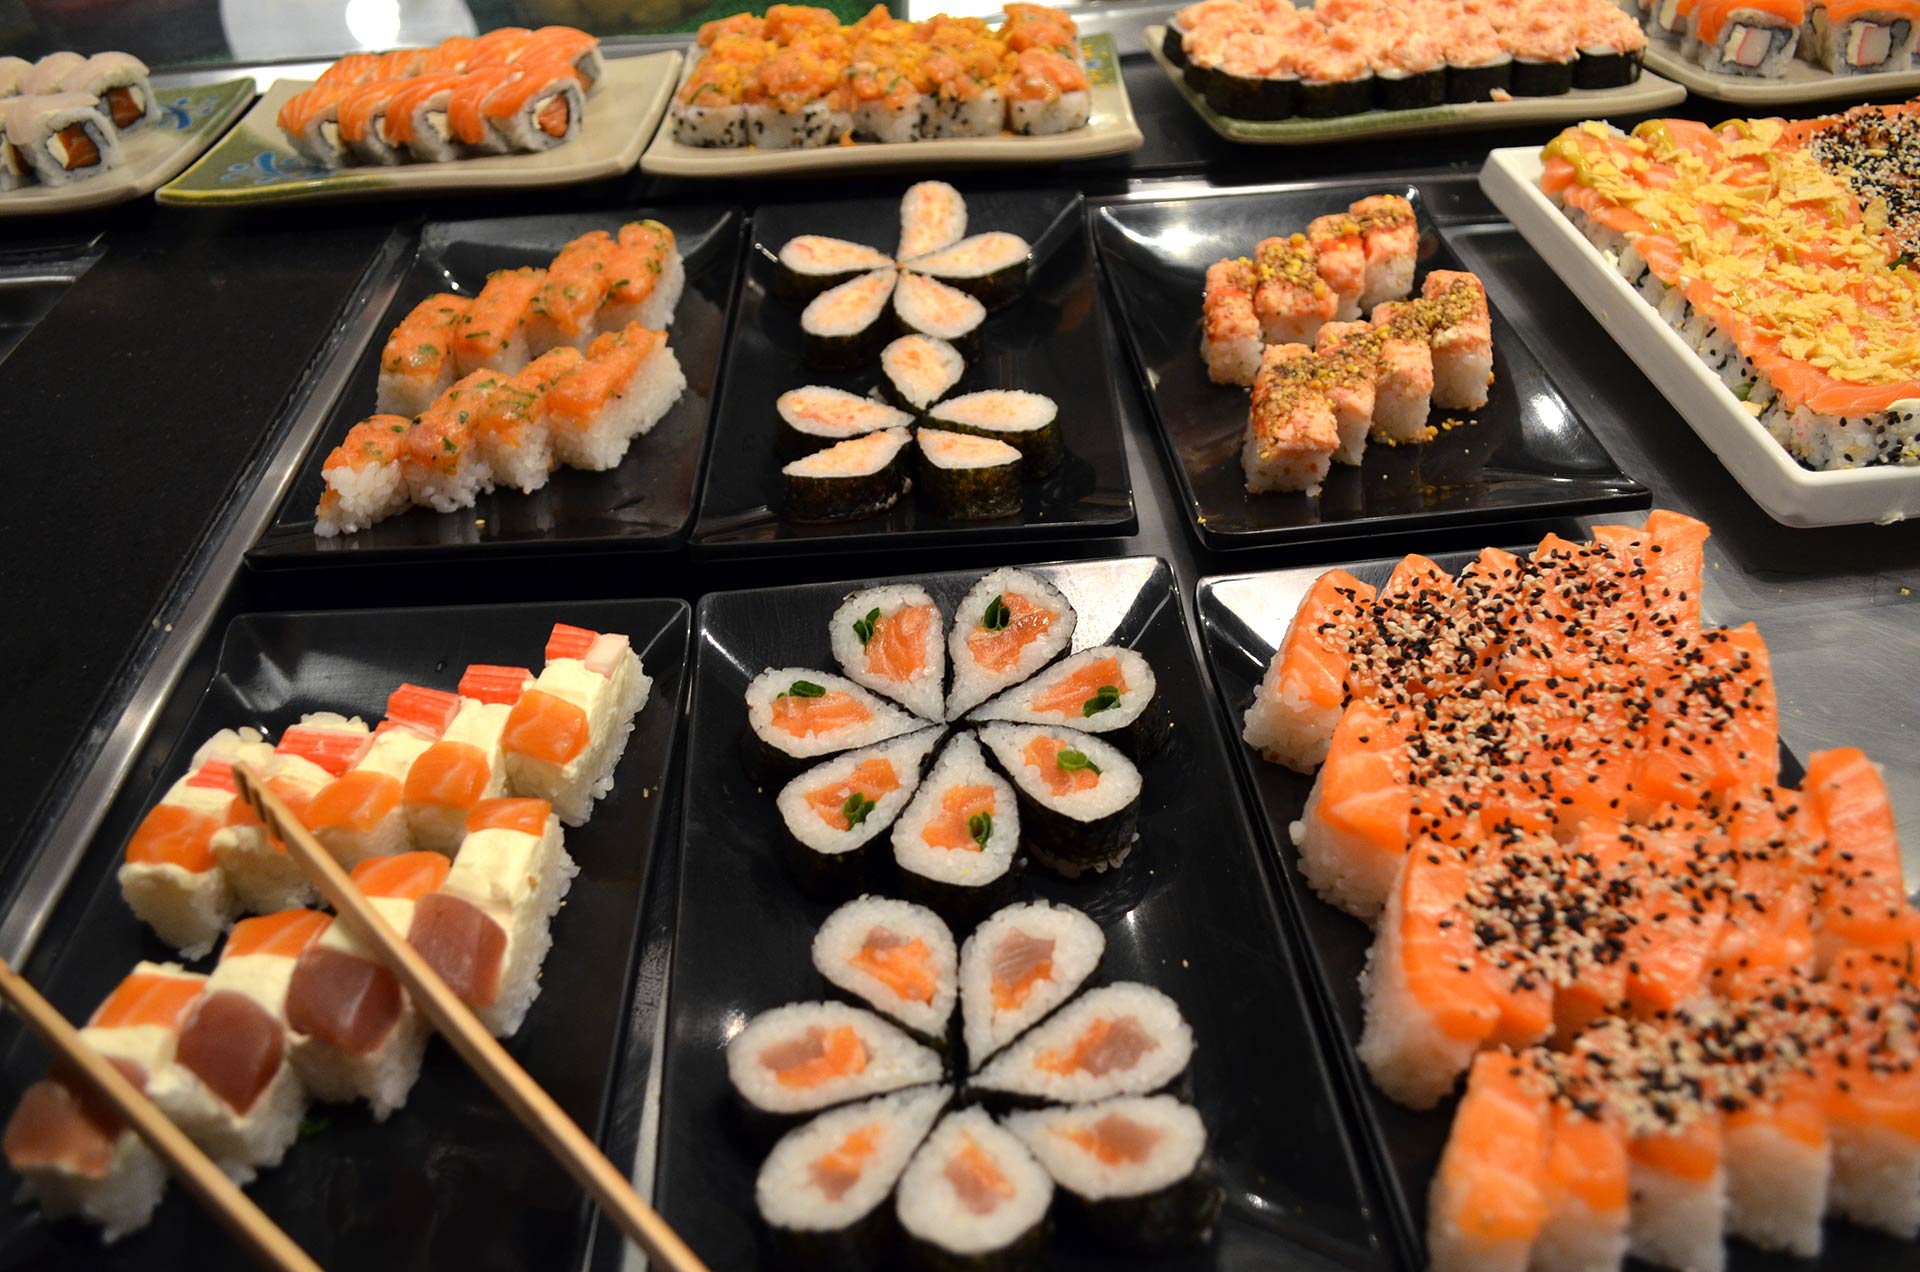 Comida japonesa em Brasília: veja como foi no Restaurante Haná